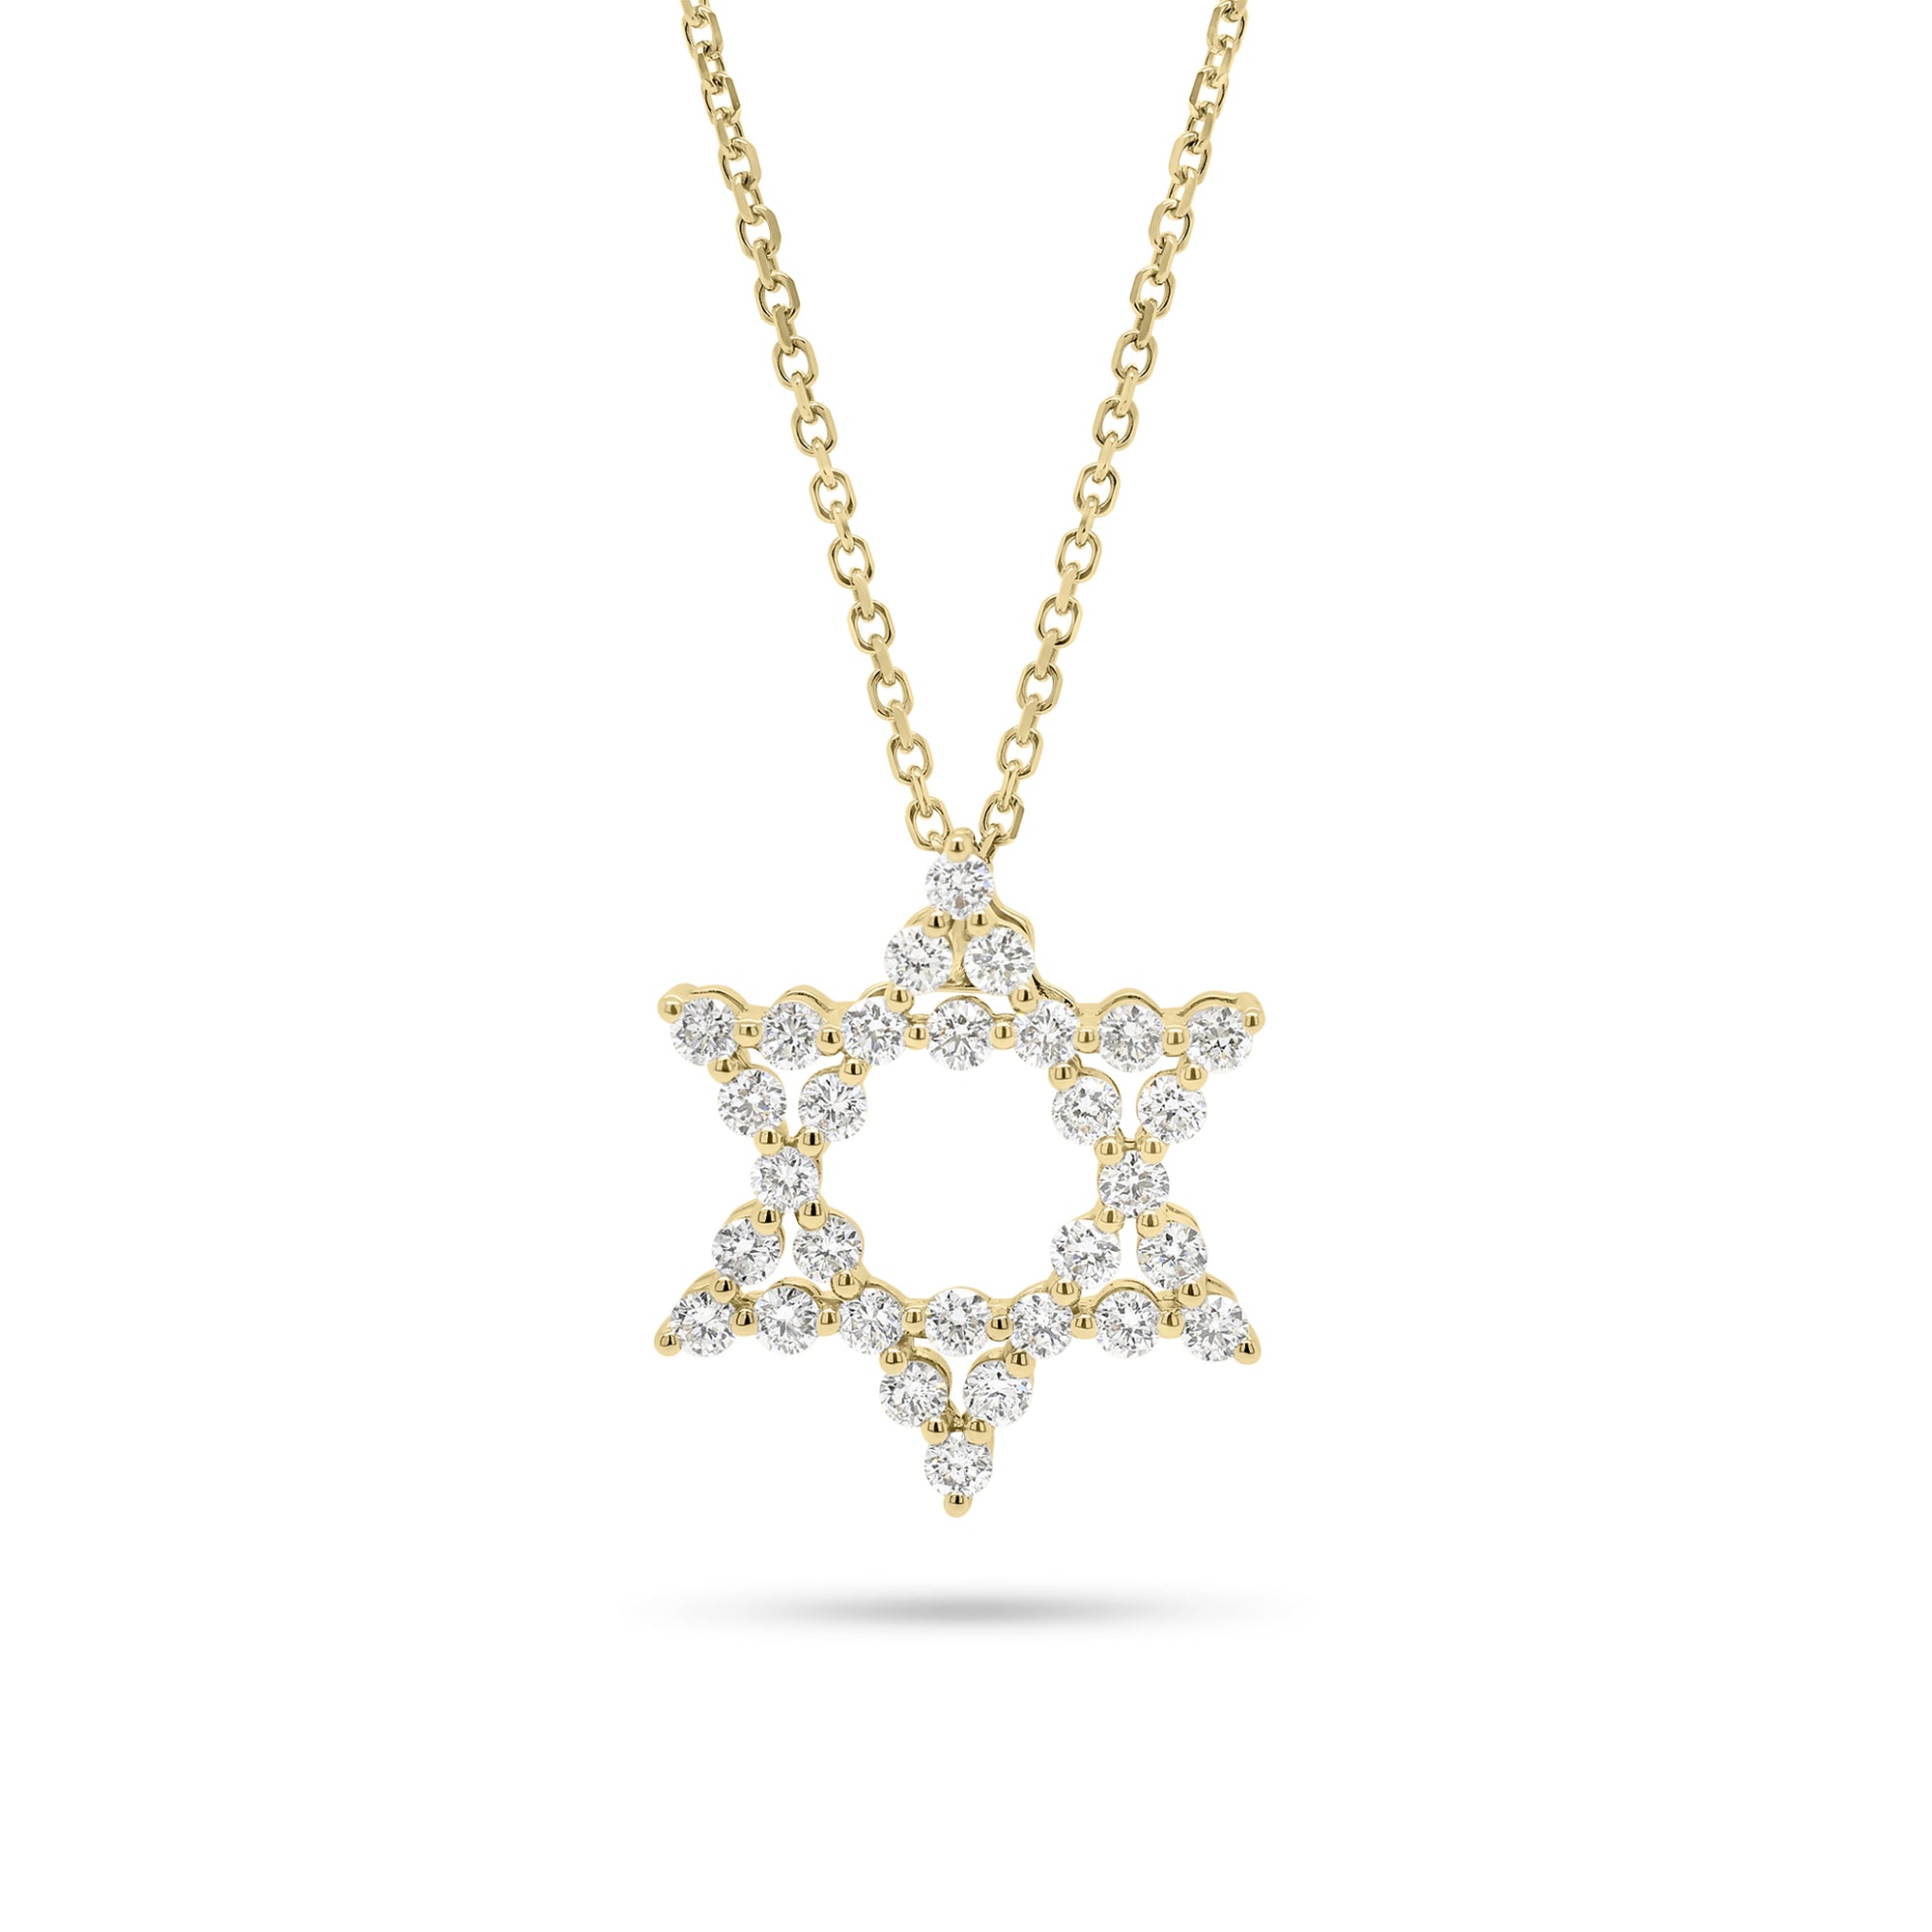 Round Diamond Star of David Pendant Necklace - 18K gold weighing 1.33 grams (pendant)  - 14K gold weighing 1.60 grams (necklace)  - 30 round diamonds weighing 0.62 carats